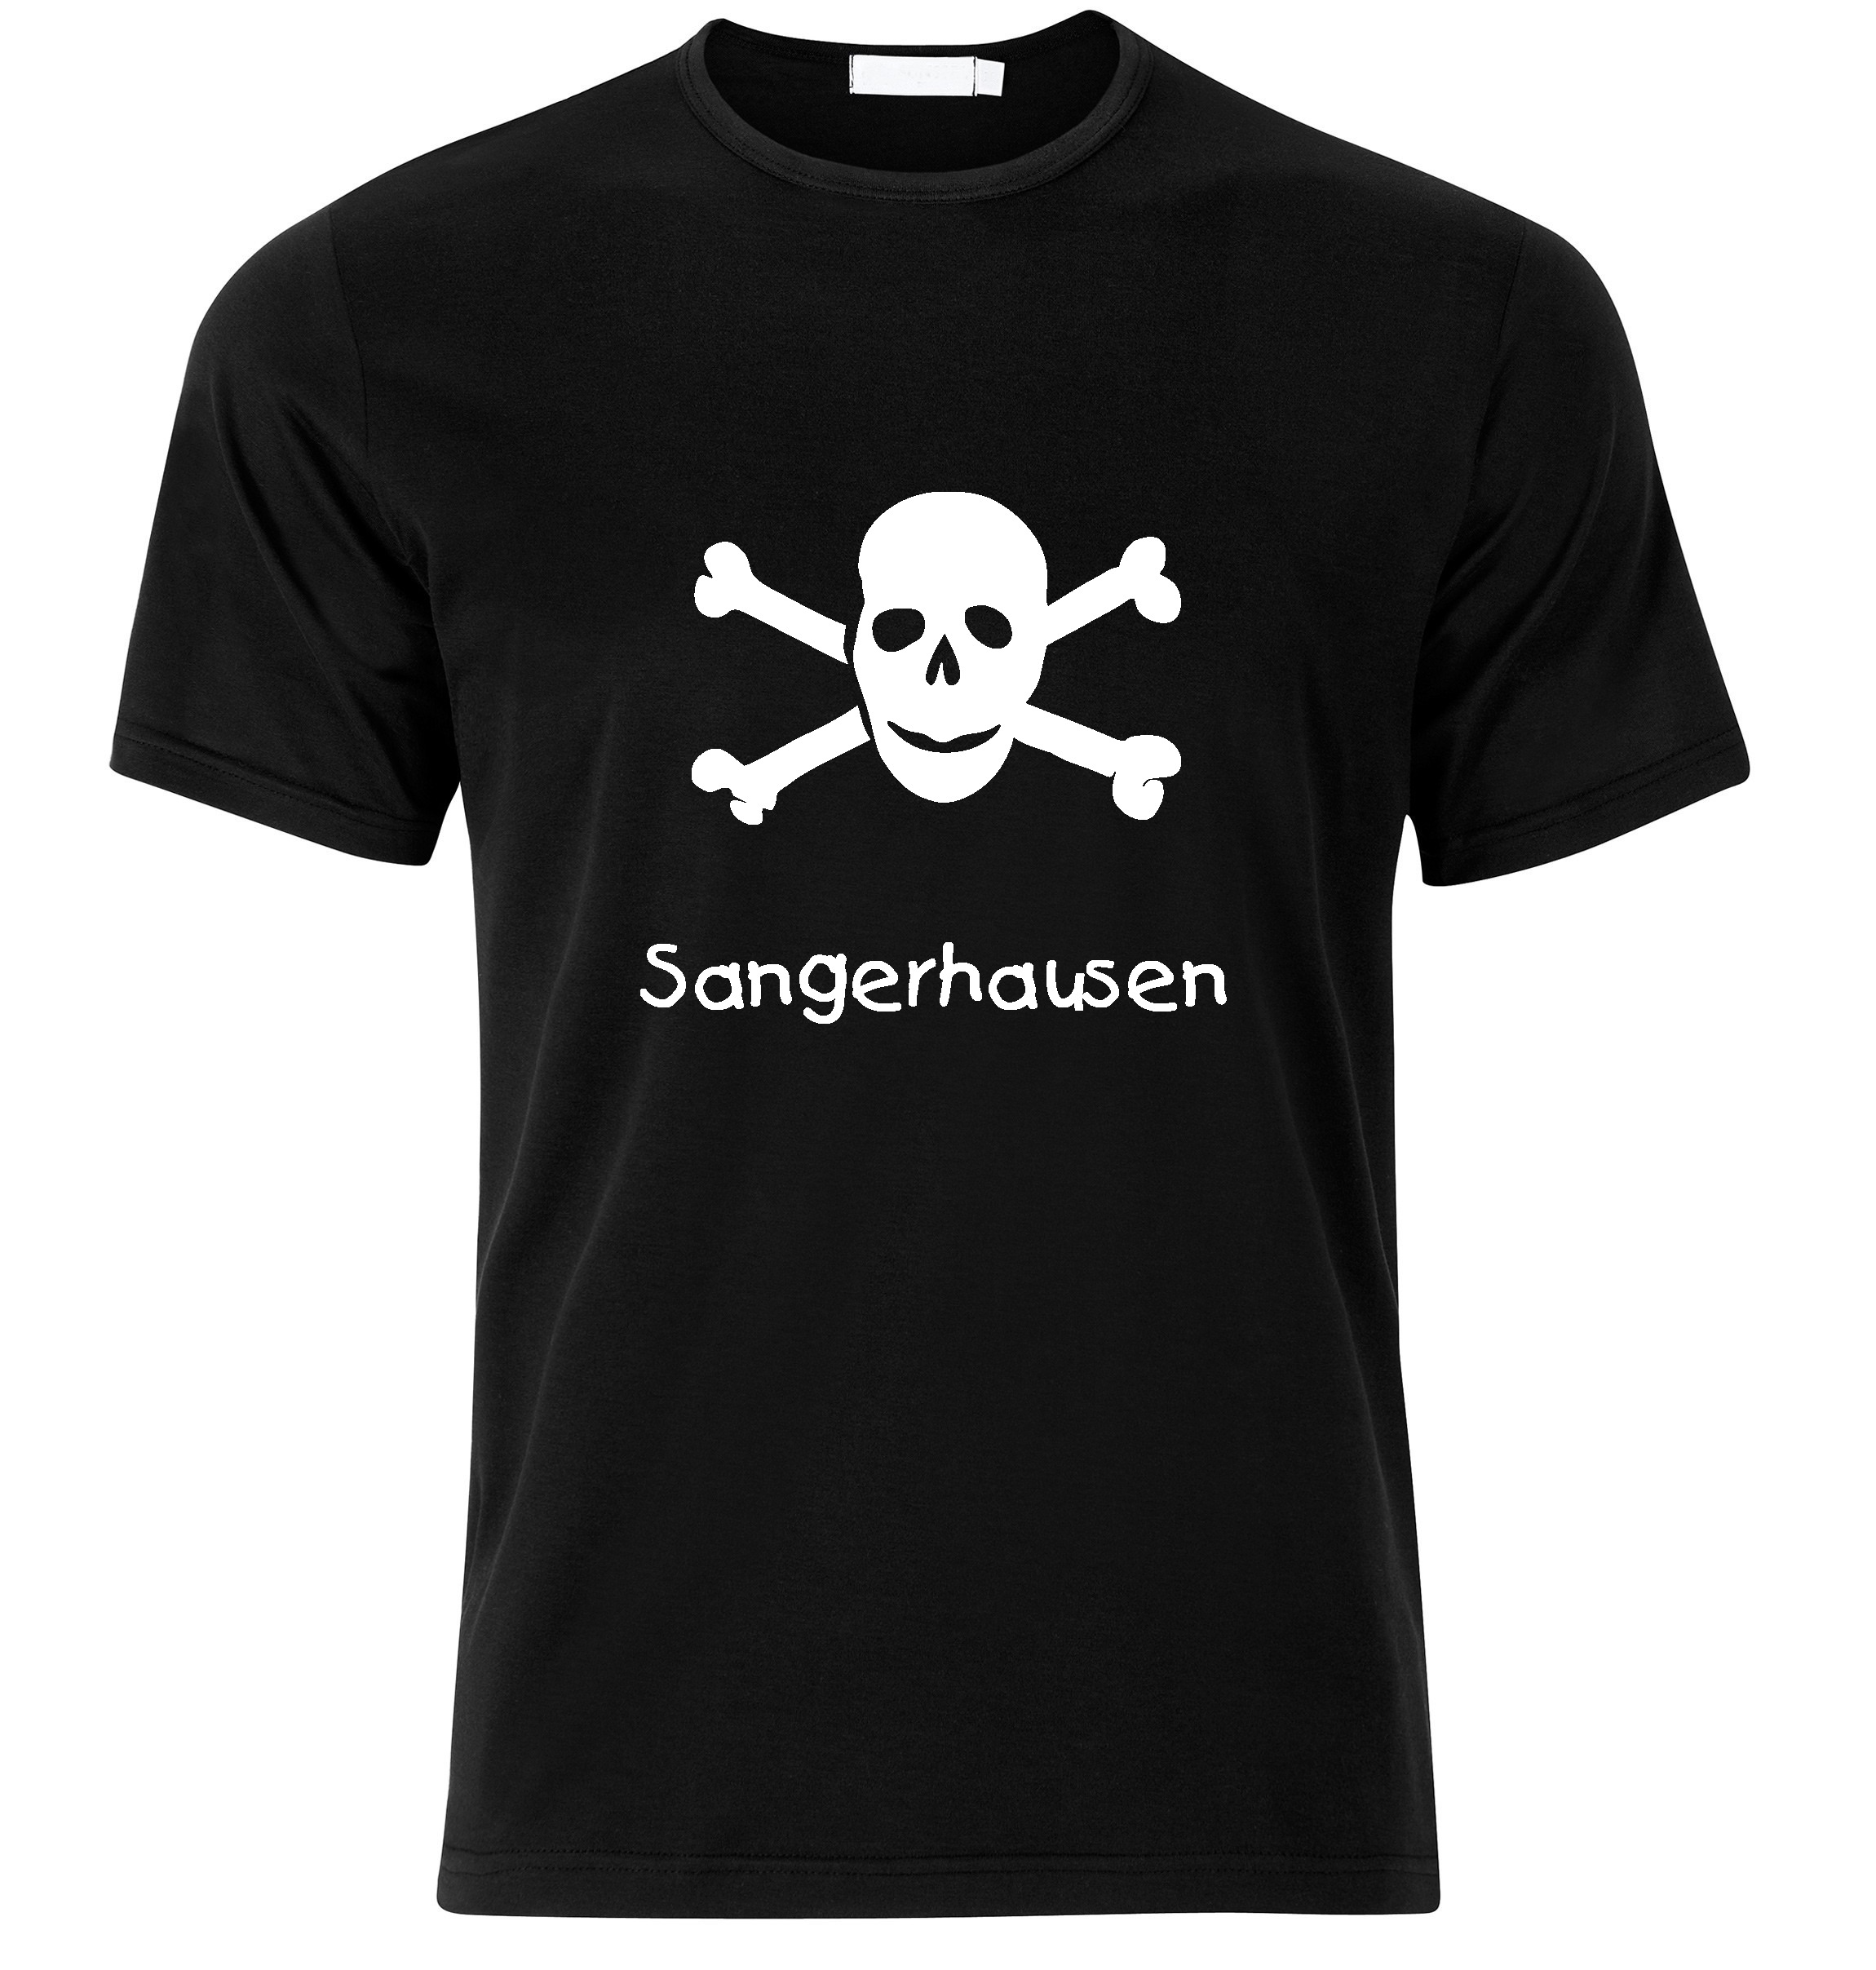 T-Shirt Sangerhausen Jolly Roger, Totenkopf